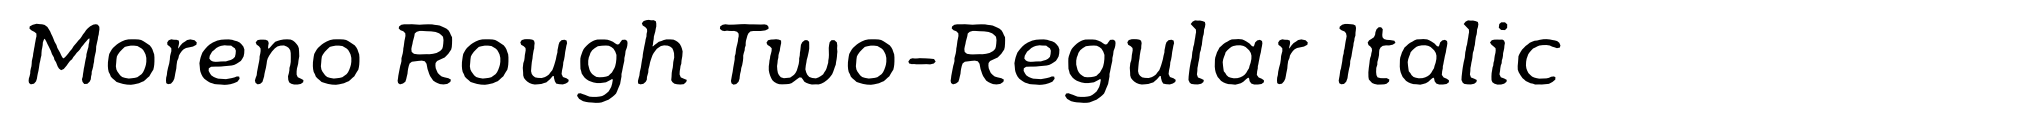 Moreno Rough Two-Regular Italic image